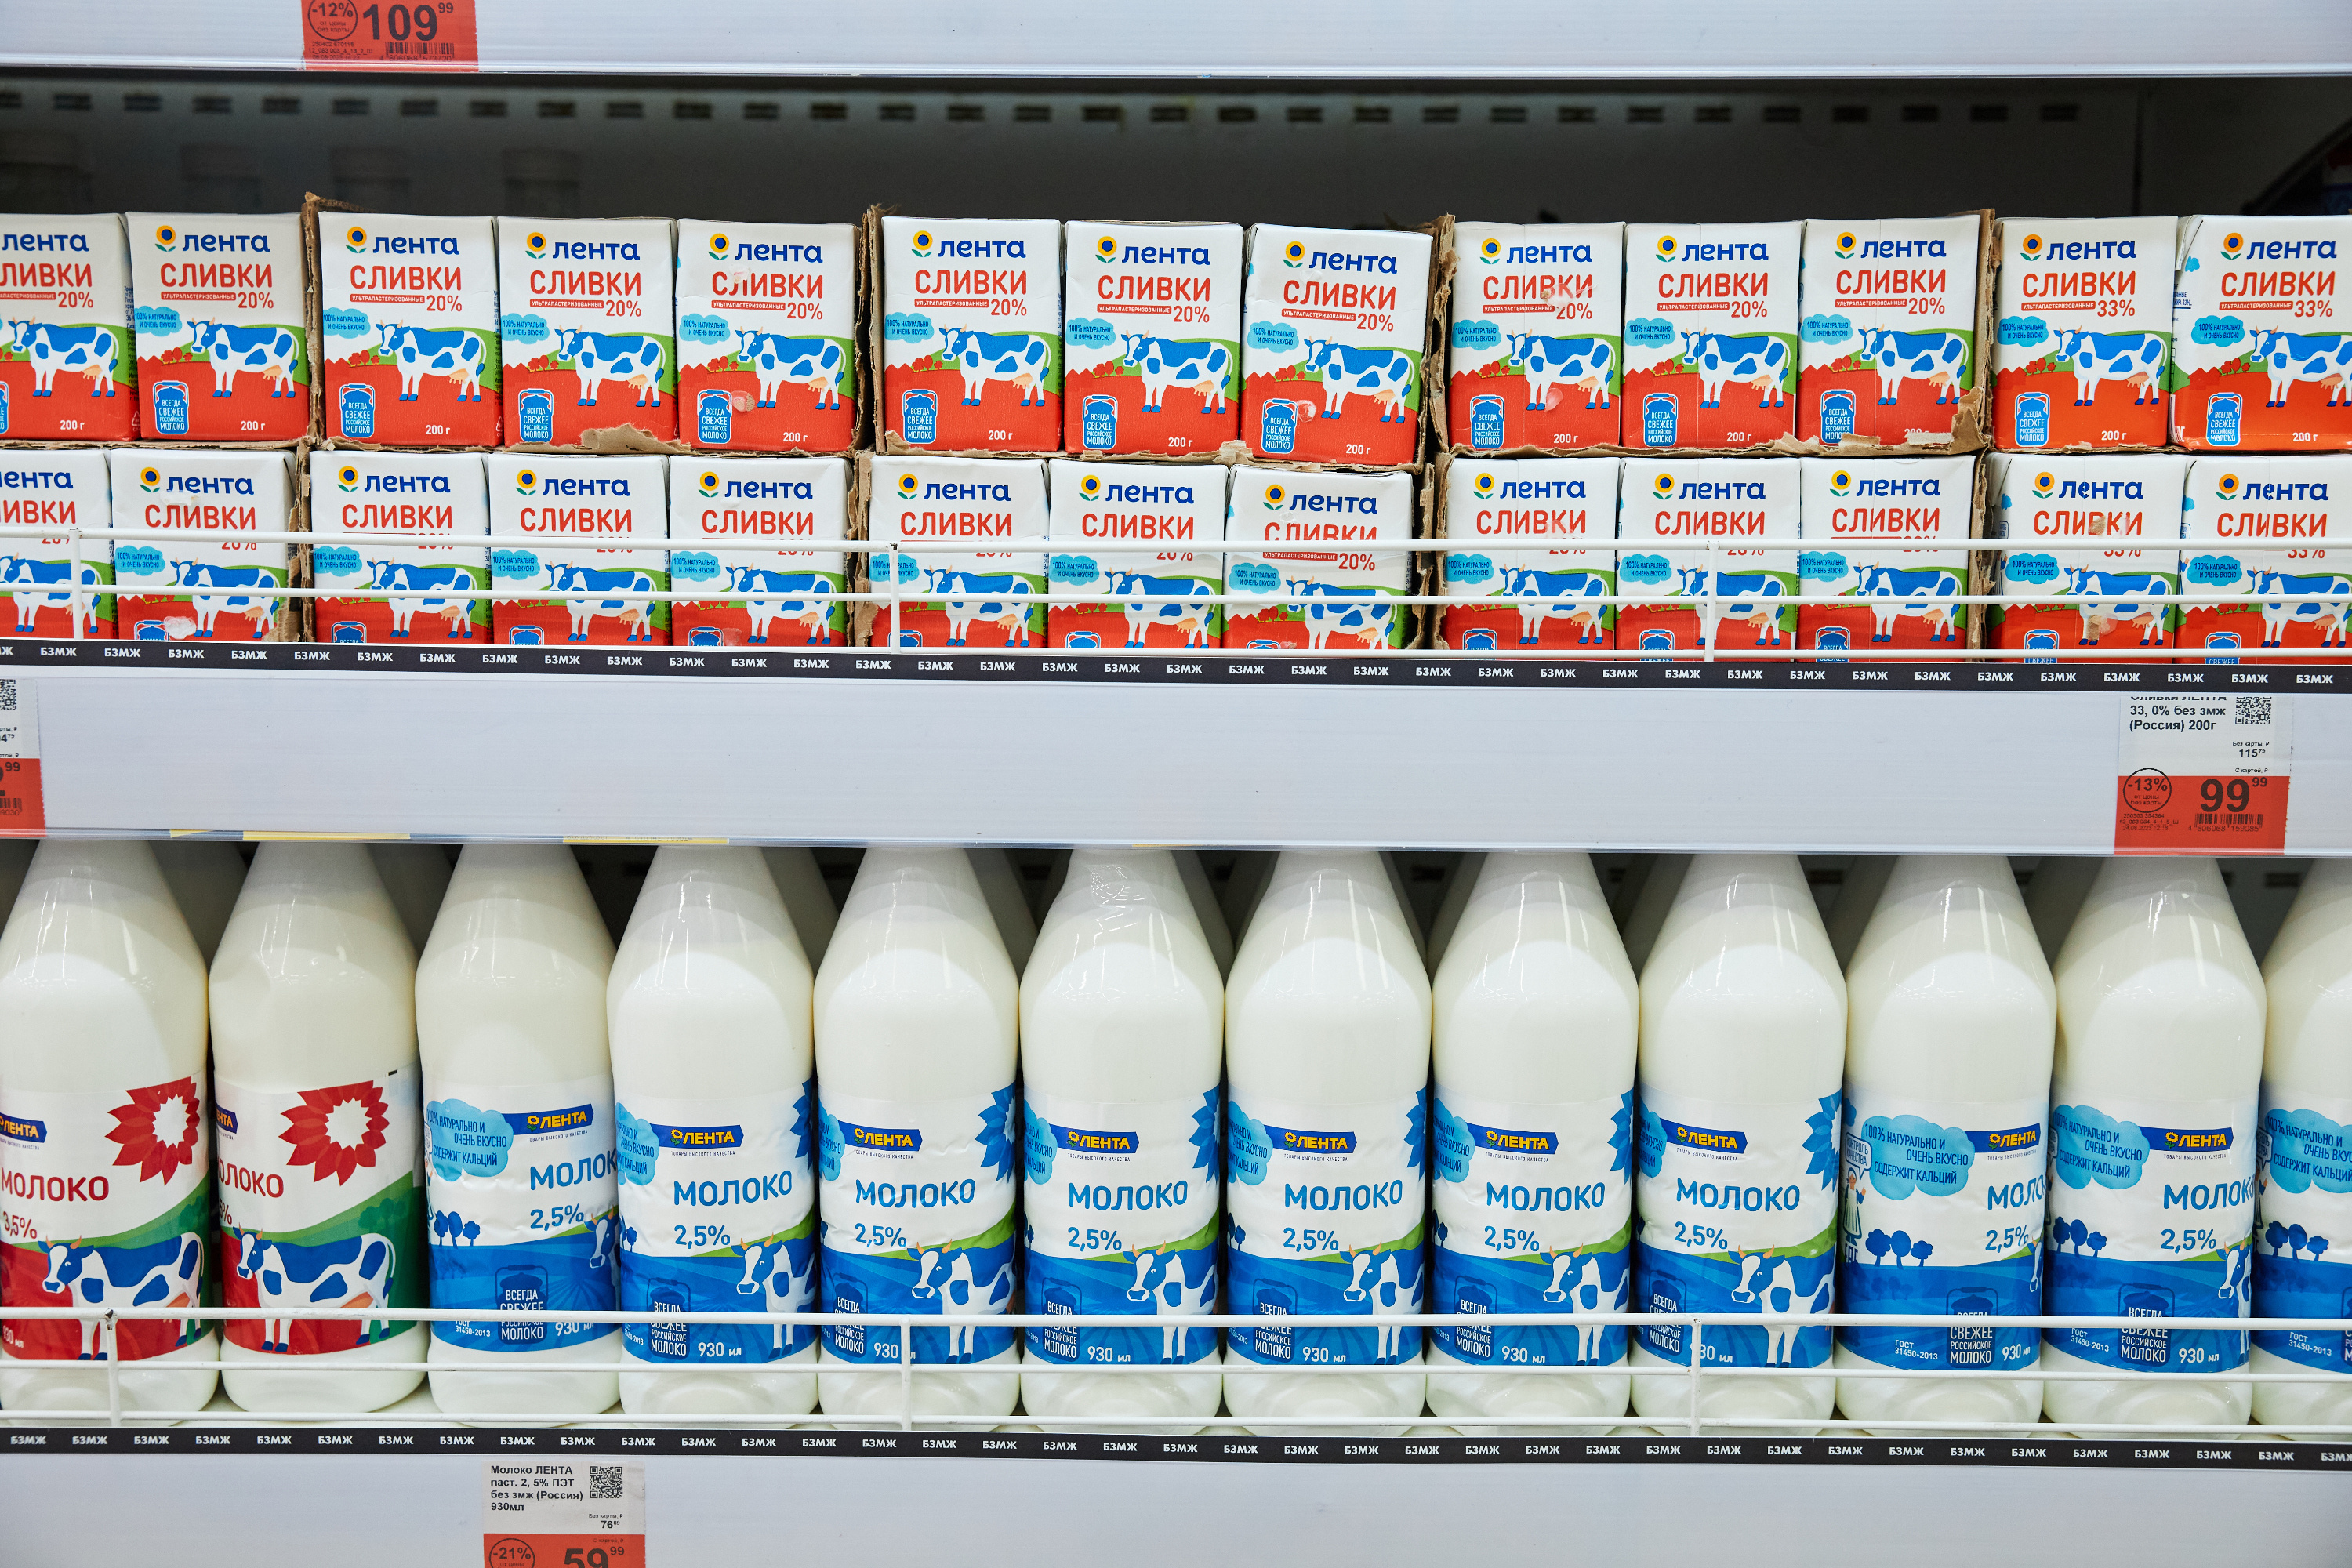 На полках гипермаркета есть и молоко от собственной торговой марки